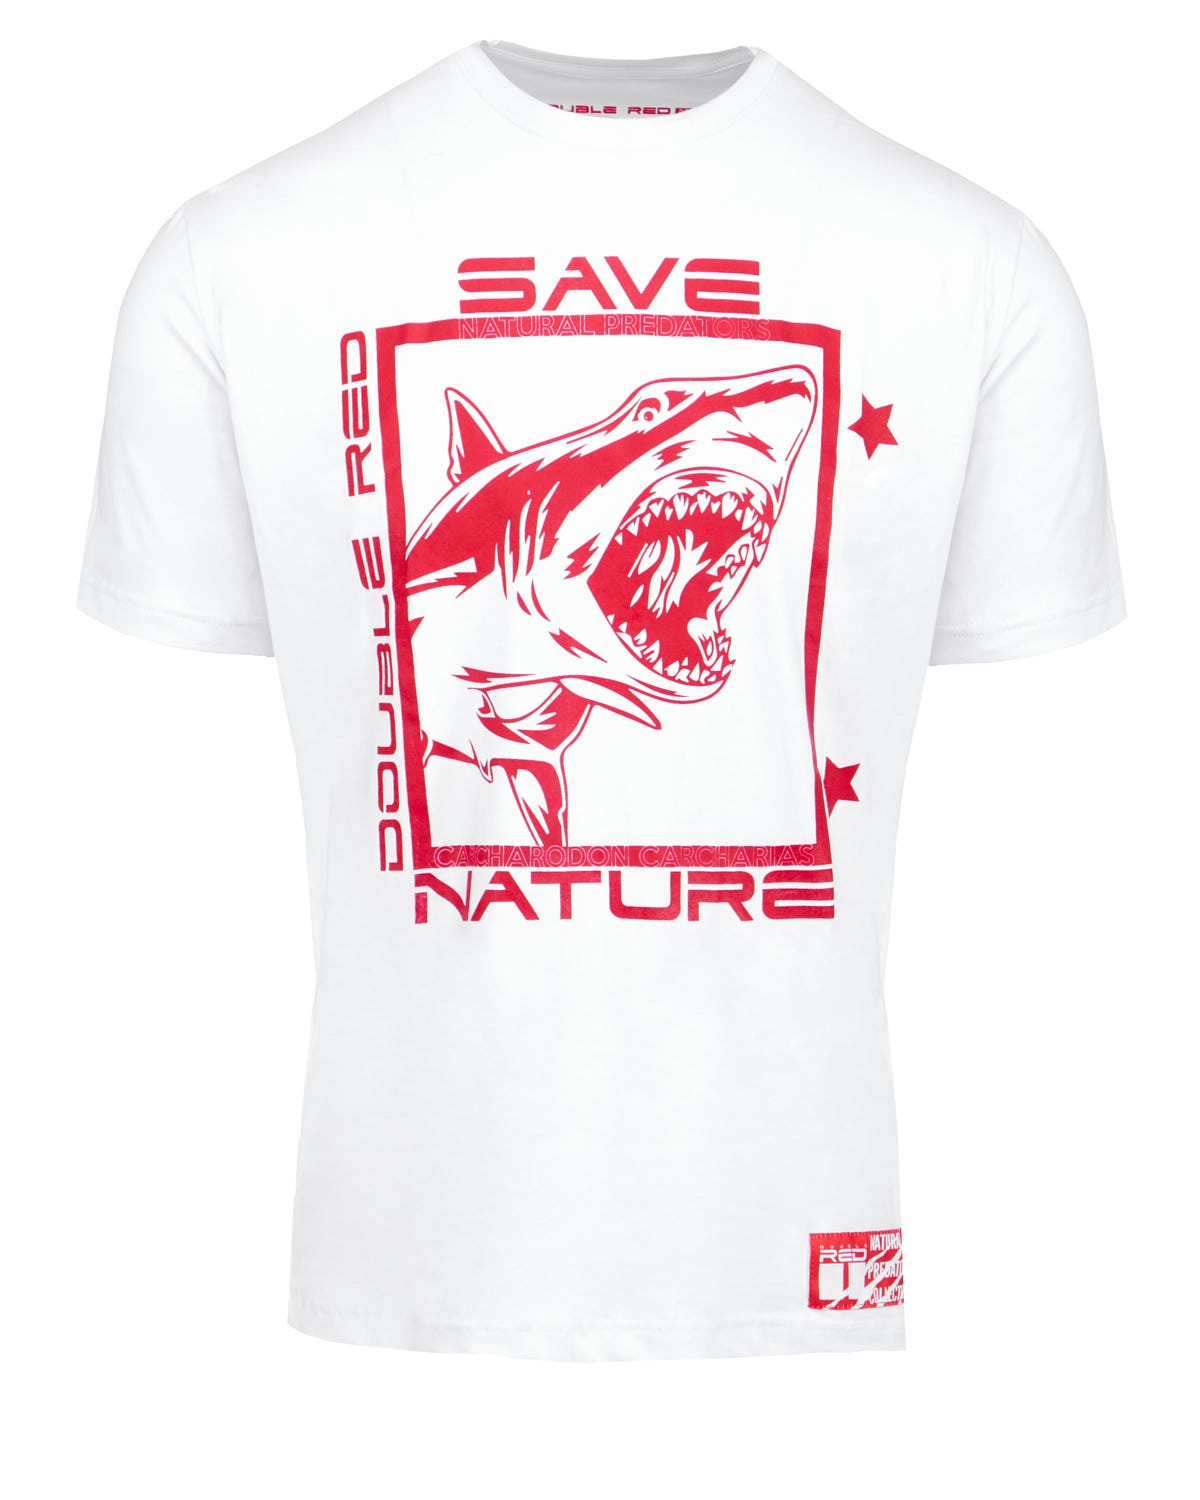 Natural Predators Shark T-Shirt White